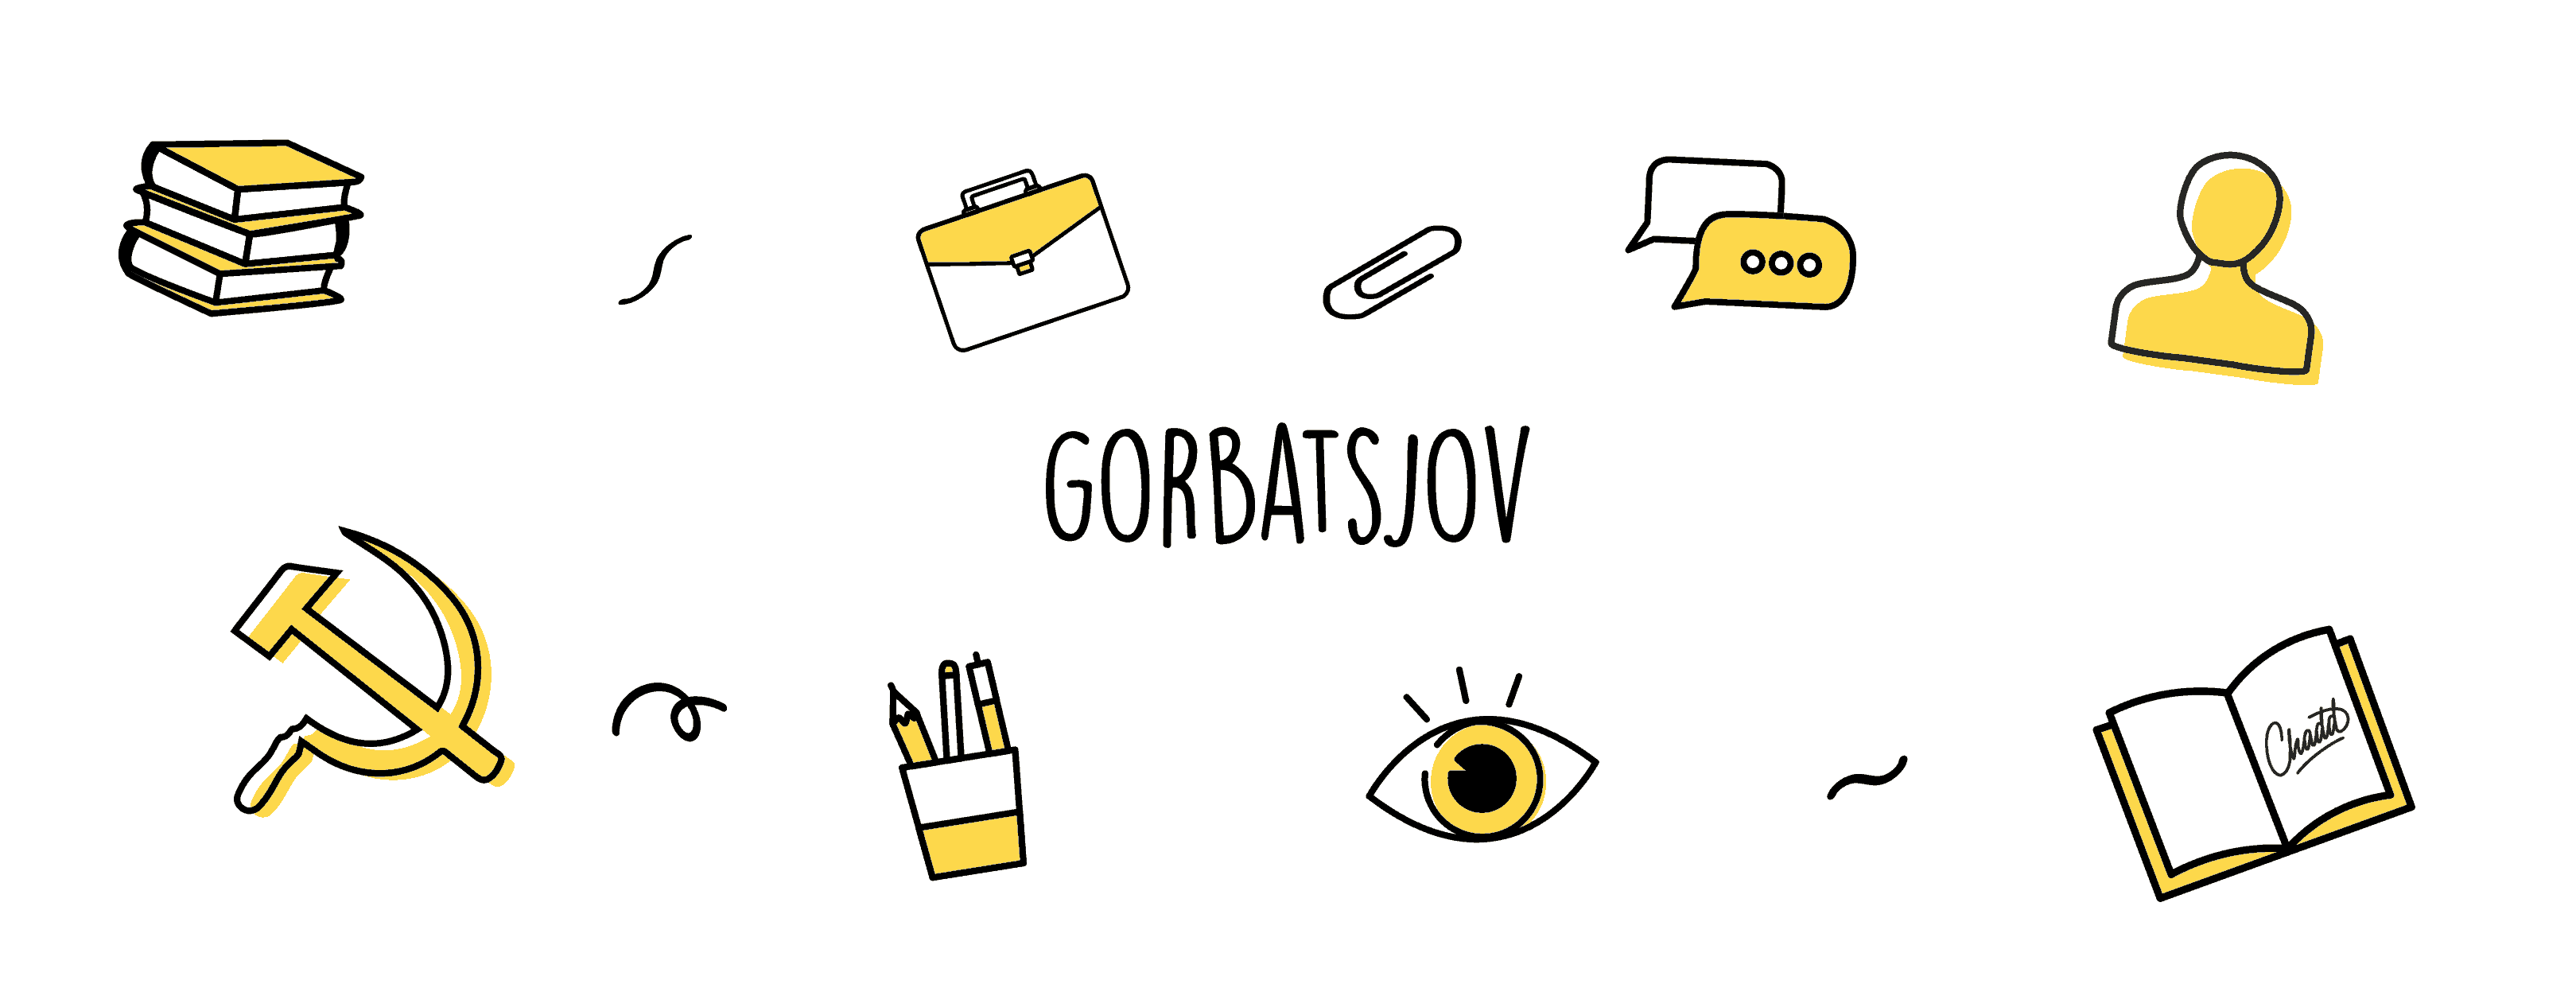 gorbatsjov